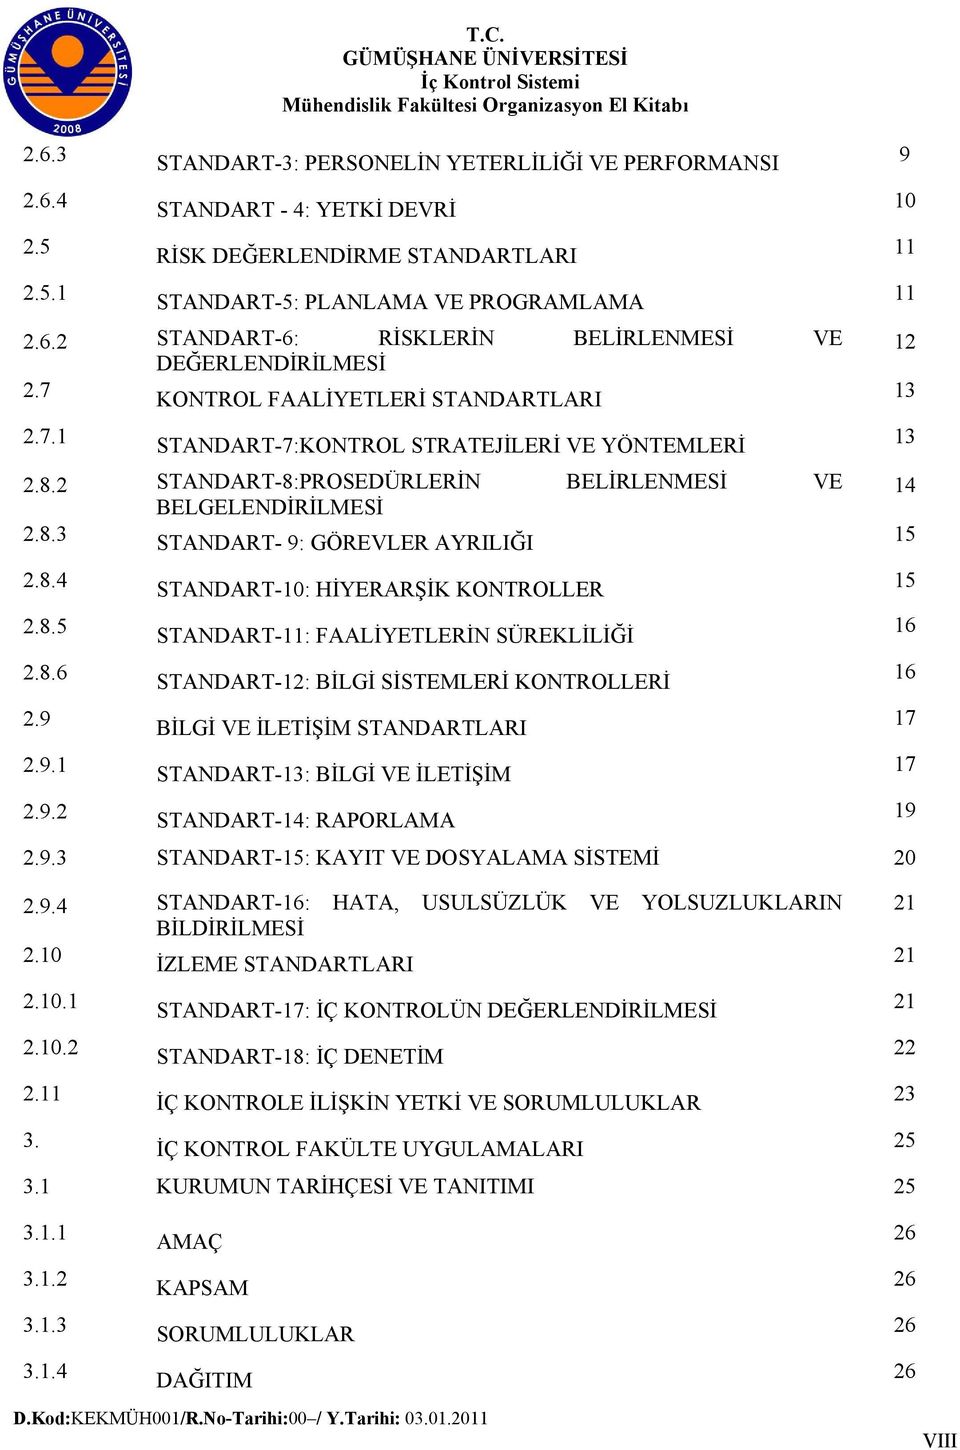 8.4 STANDART-10: HİYERARŞİK KONTROLLER 15 2.8.5 STANDART-11: FAALİYETLERİN SÜREKLİLİĞİ 16 2.8.6 STANDART-12: BİLGİ SİSTEMLERİ KONTROLLERİ 16 2.9 BİLGİ VE İLETİŞİM STANDARTLARI 17 2.9.1 STANDART-13: BİLGİ VE İLETİŞİM 17 2.